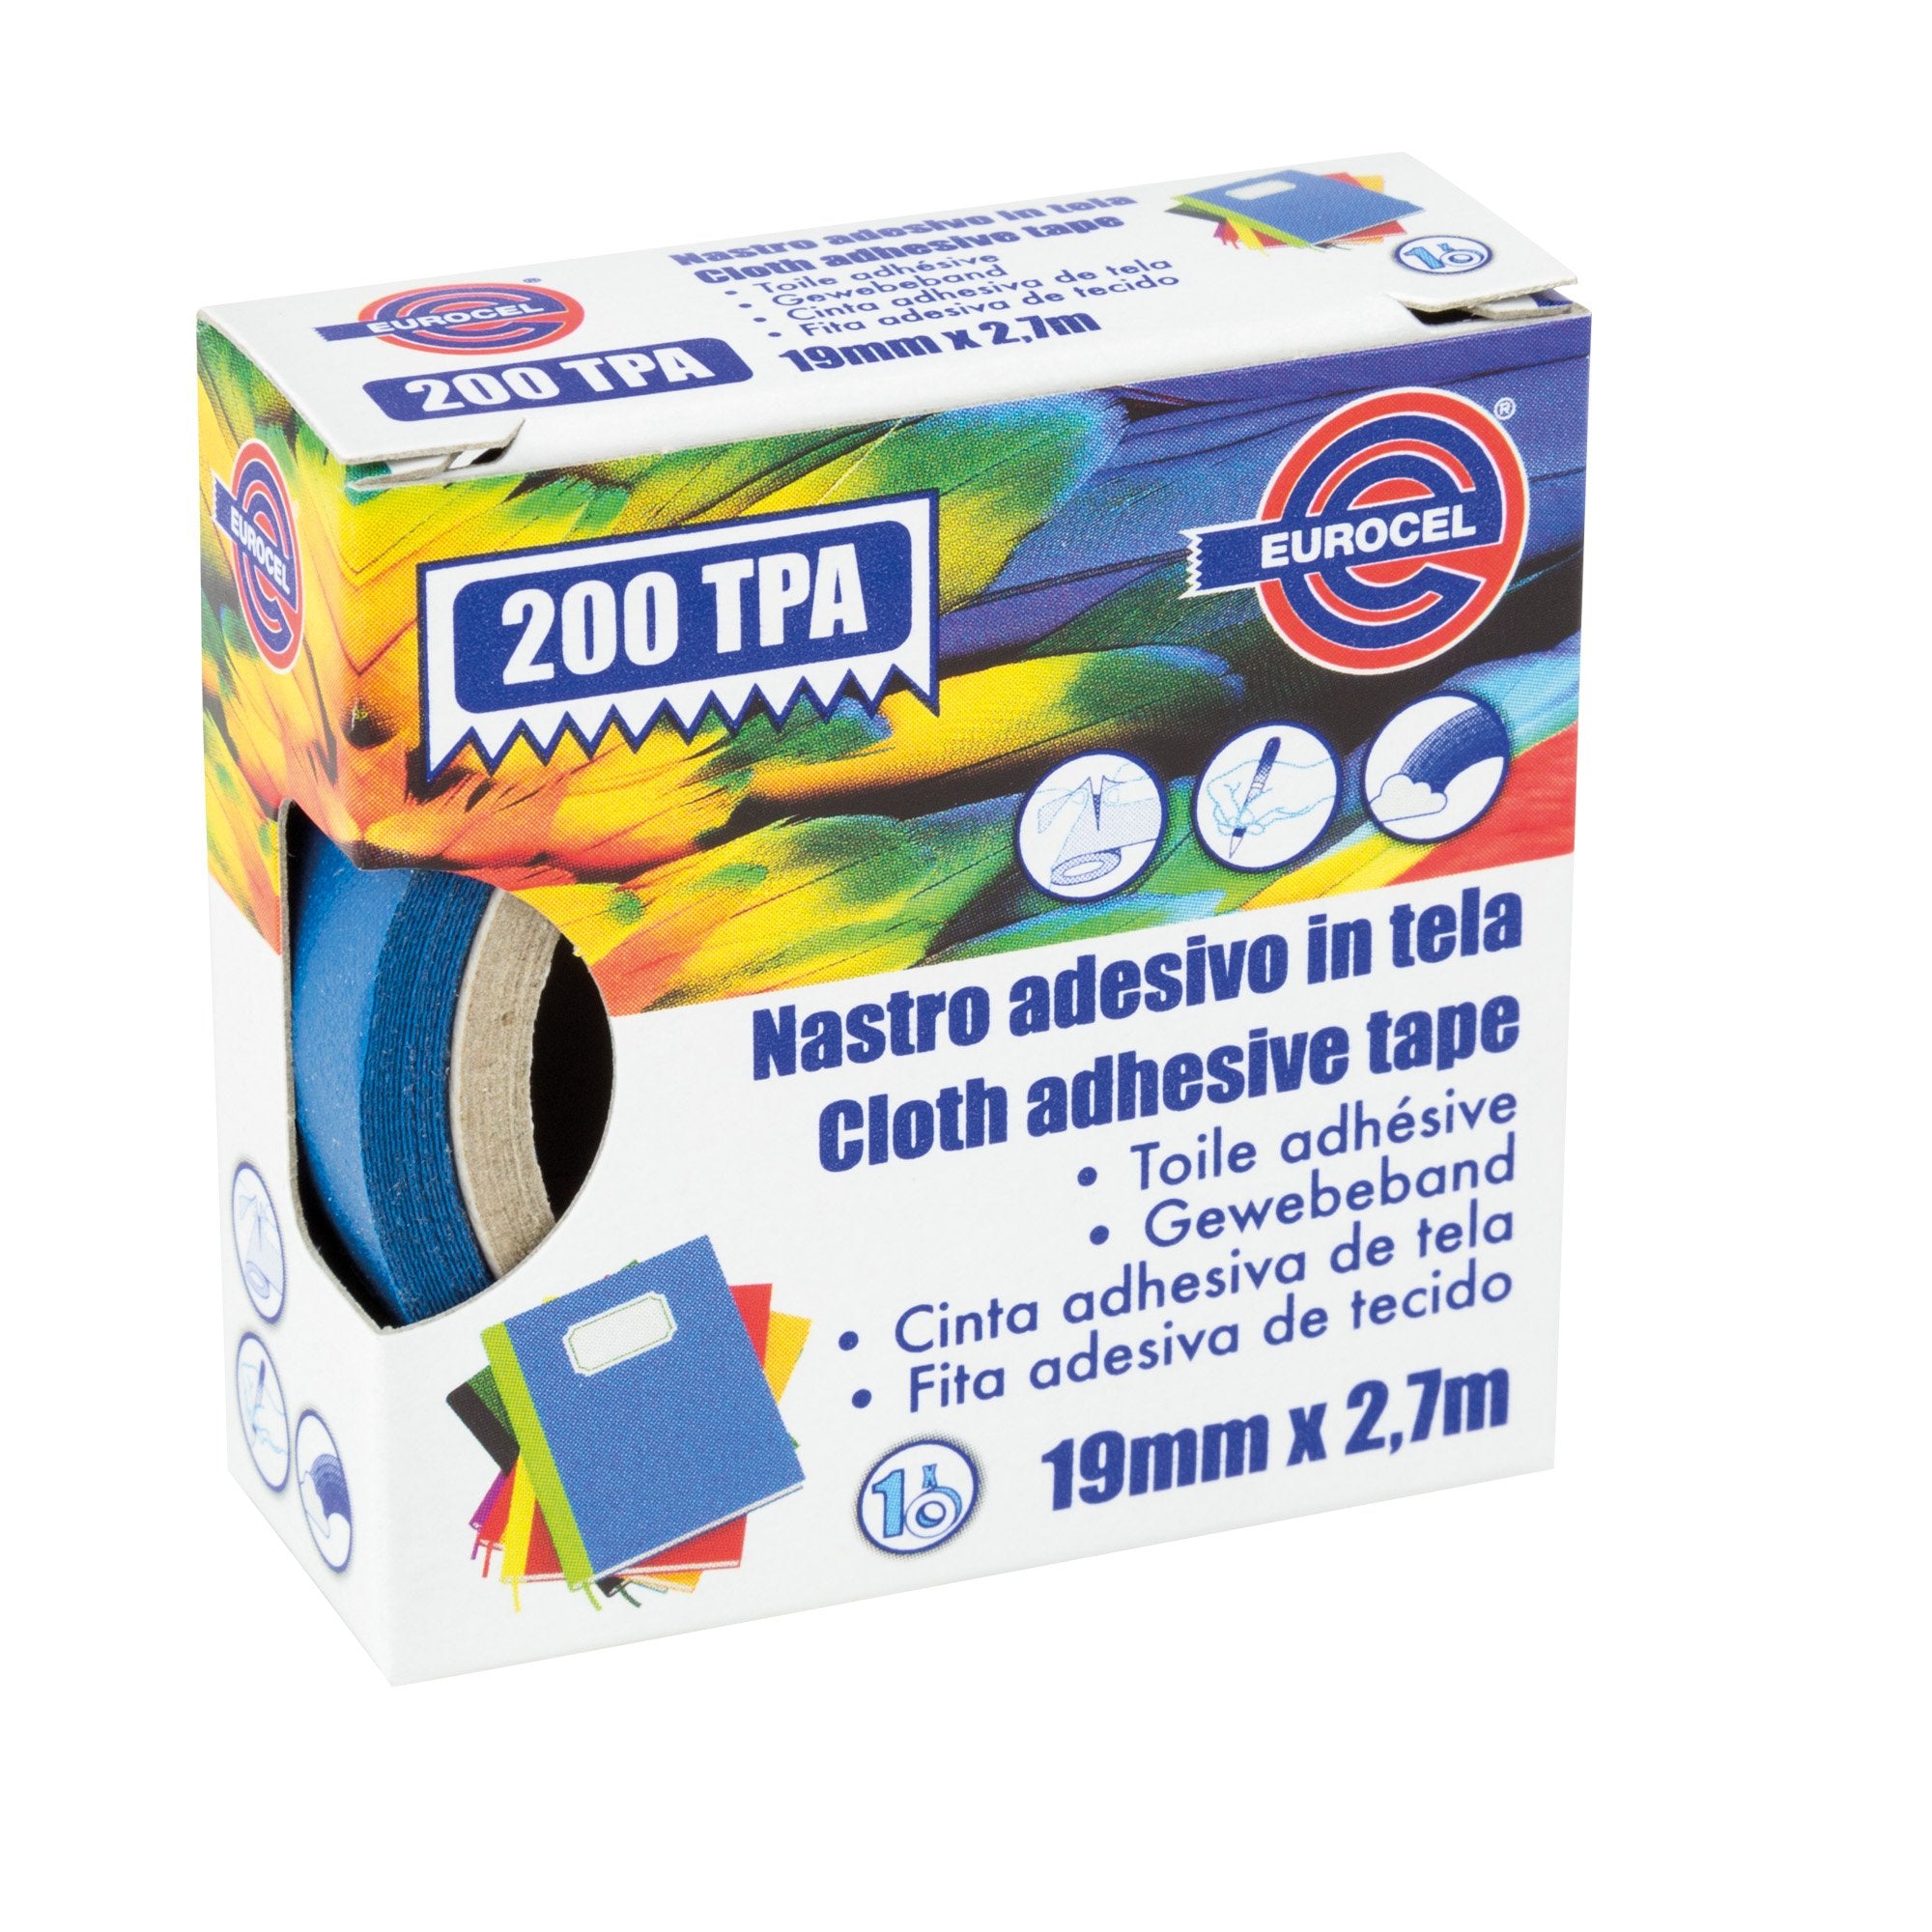 eurocel-nastro-adesivo-telato-tpa-blu-200-19mmx2-7mt